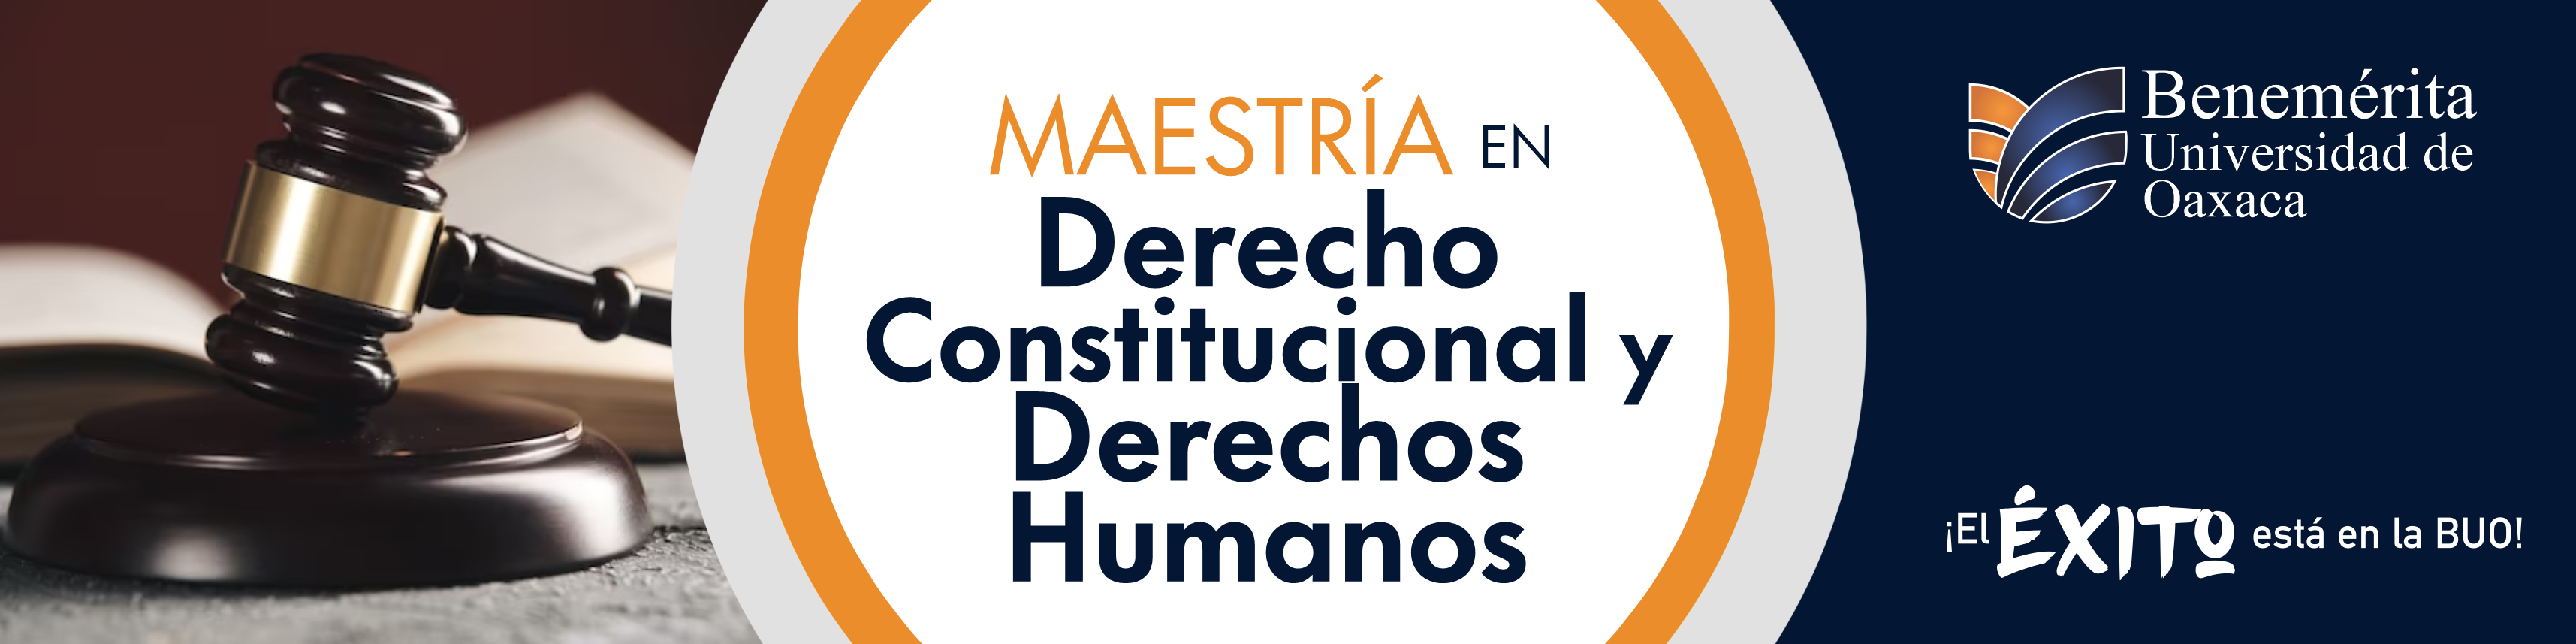 Maestría en Derecho Constitucional y Derechos Humanos 